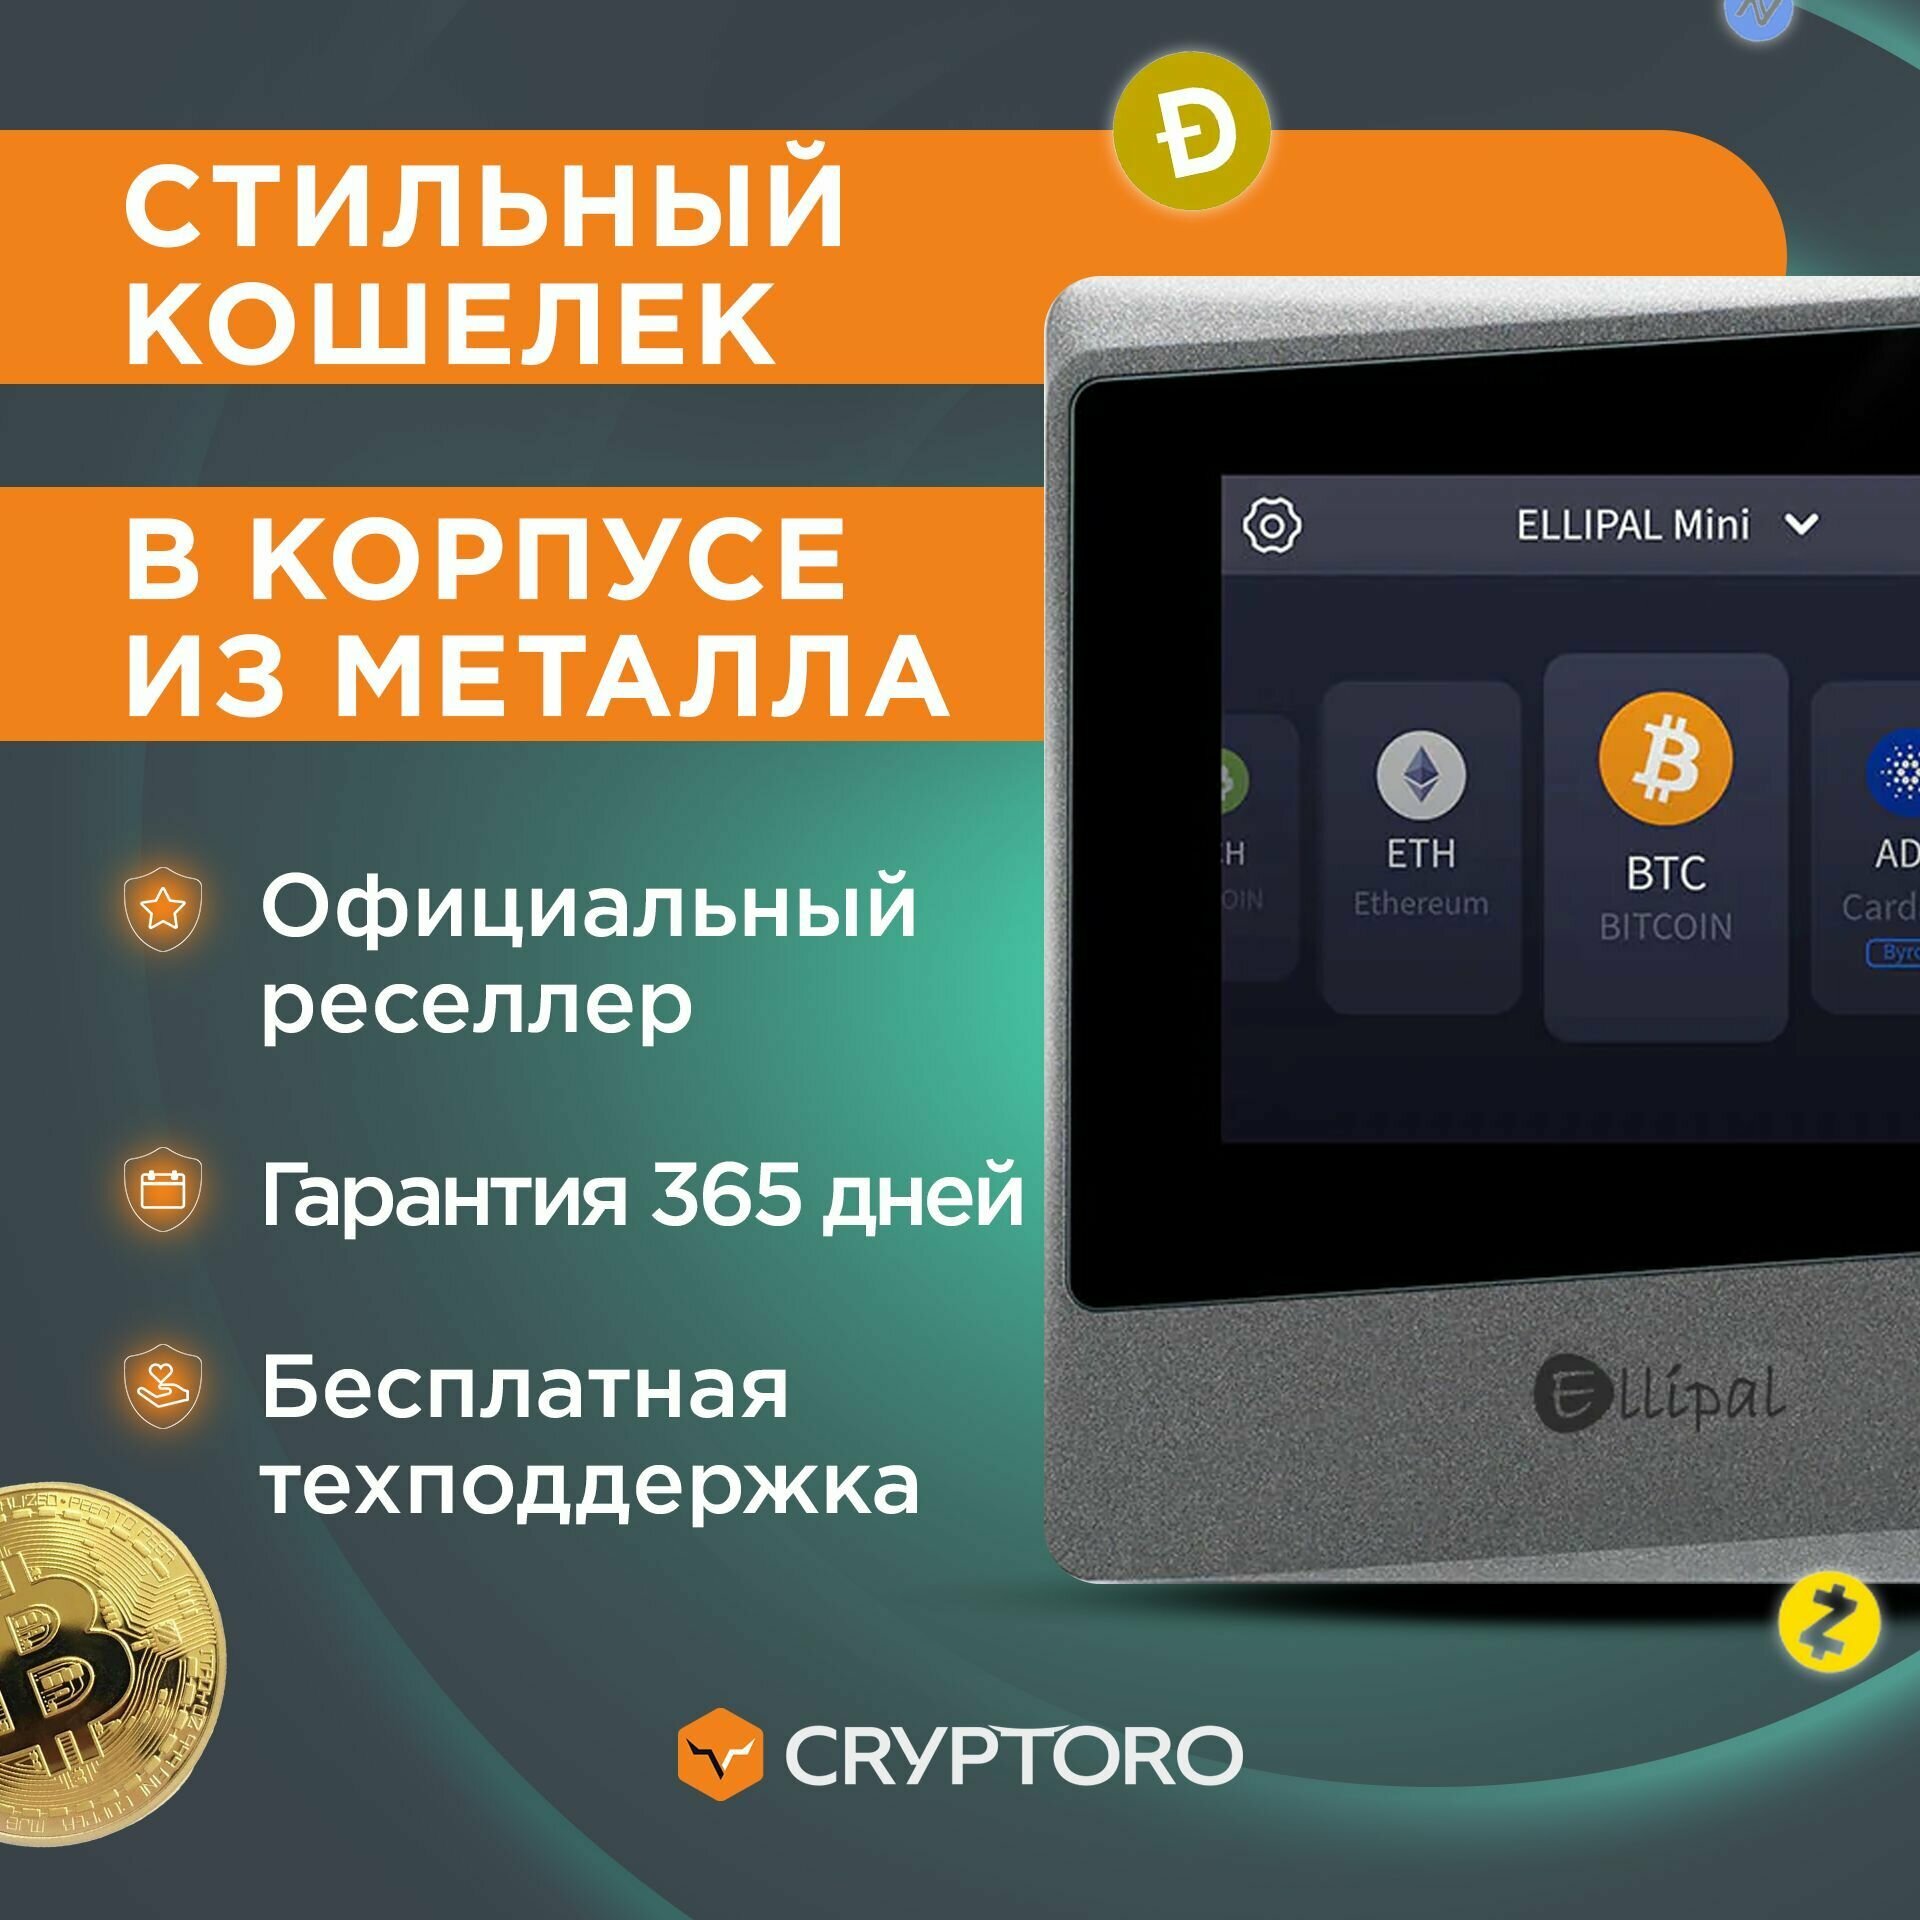 Аппаратный криптокошелек Ellipal Titan Mini - холодный кошелек для криптовалют от официального реселлера CRYPTORO